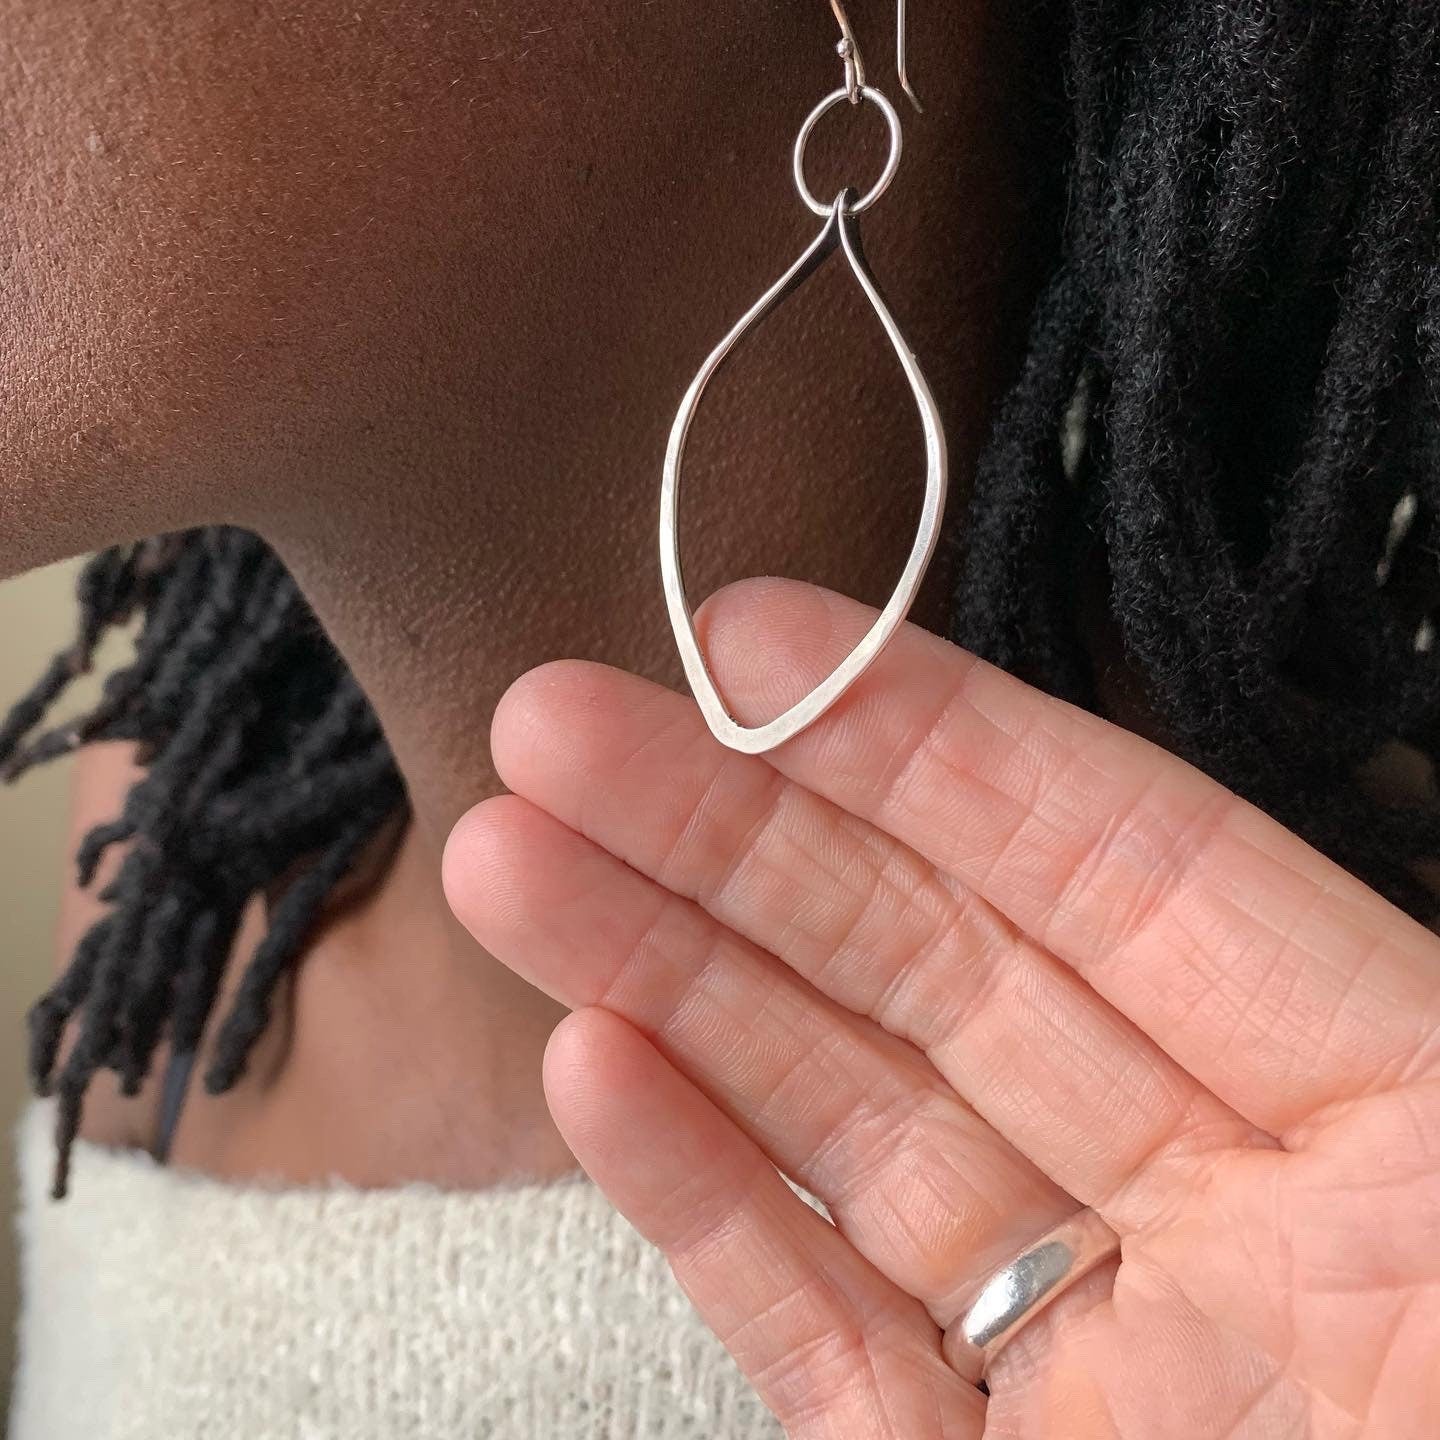 Silver leaf earrings - nature theme jewelry - sterling earrings - boho jewelry - street style - earthy, everyday earrings - gifts for women